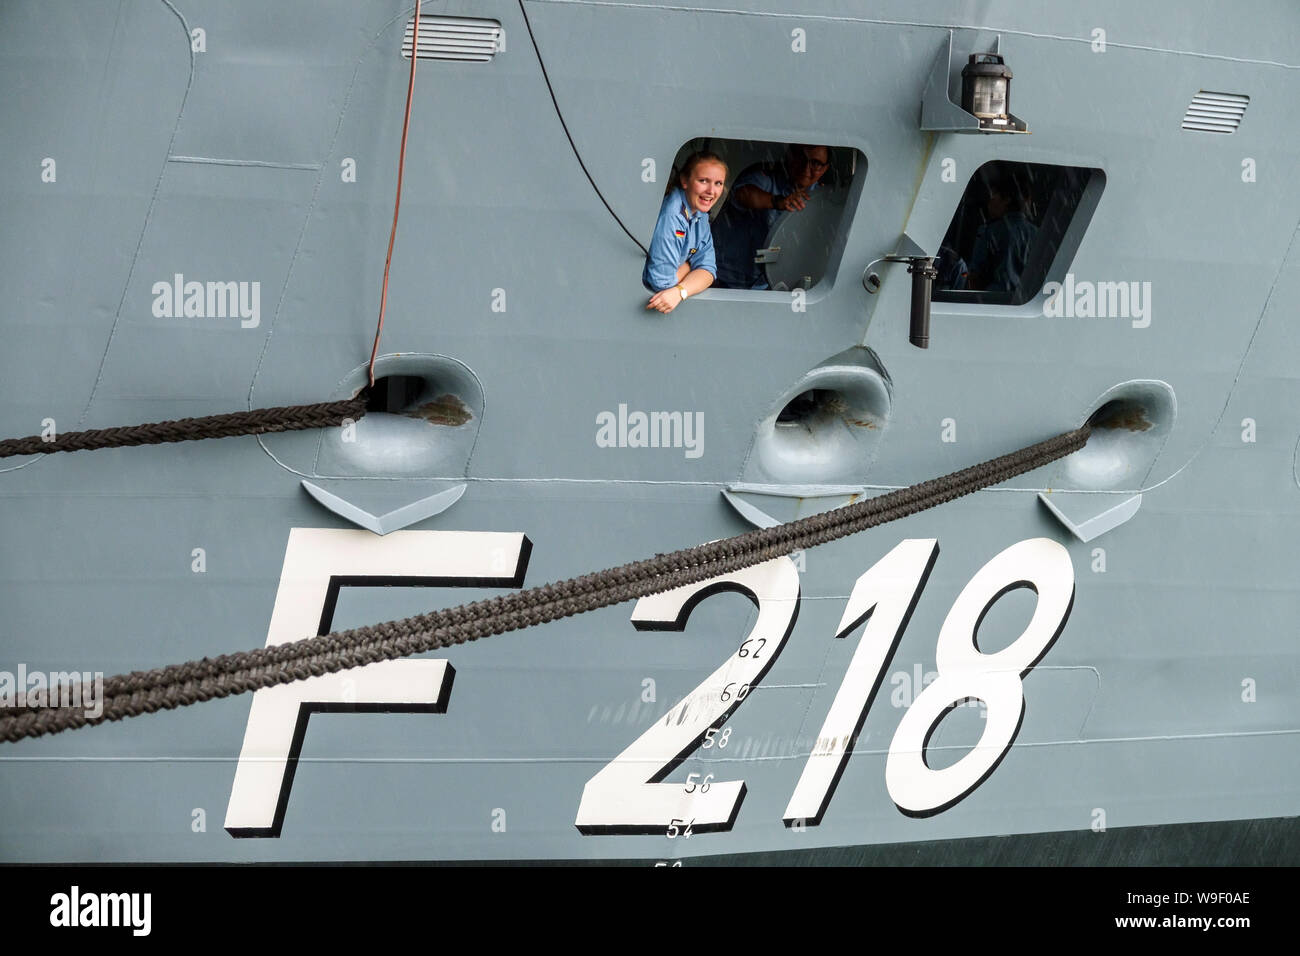 Una mujer miembro de la tripulación en una ventana en la popa de un barco, mujeres del ejército alemán fragata alemana Mecklenburg-Vorpommern en Rostock Alemania marina Foto de stock